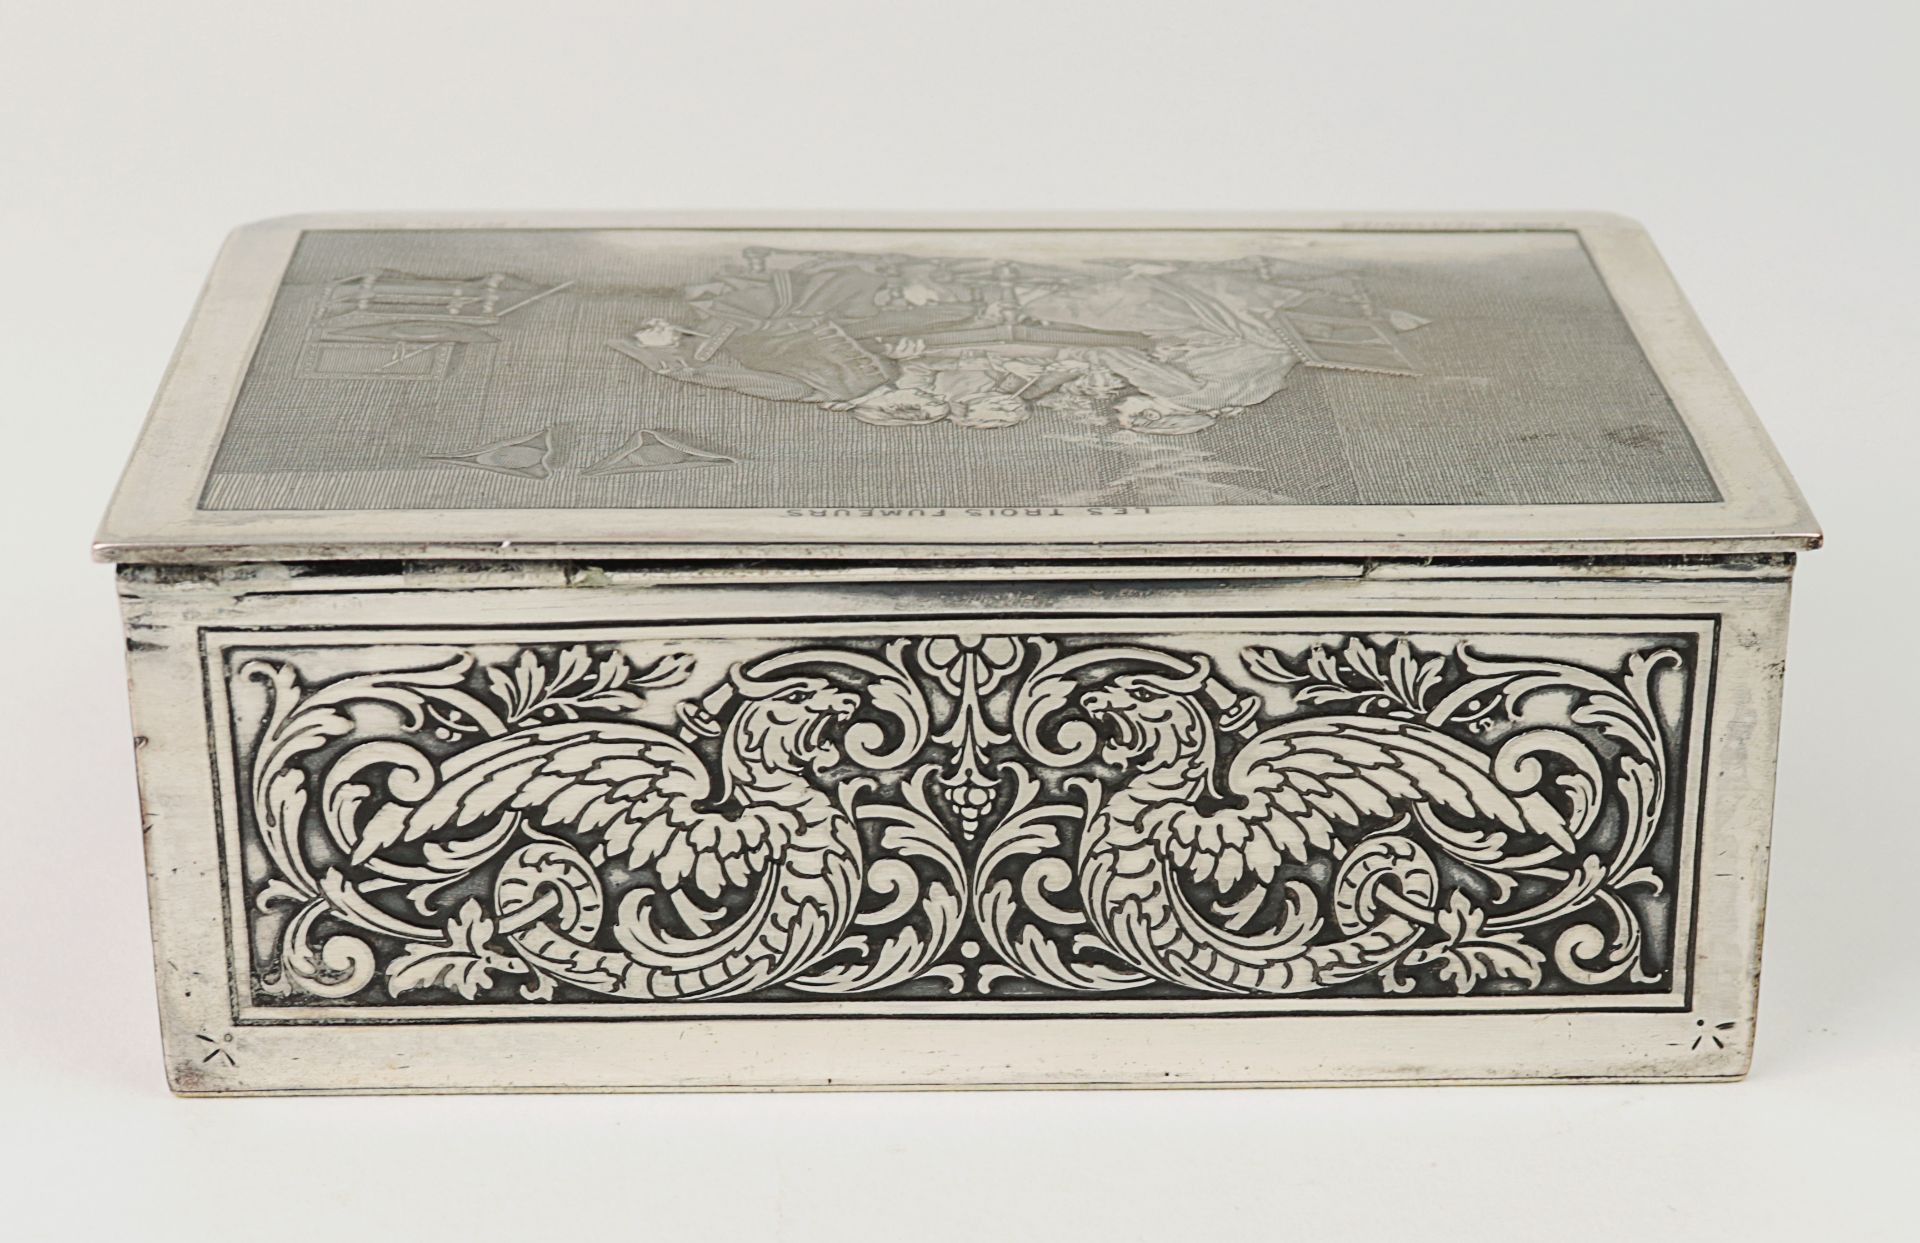 Deckeldose Metall, rechteckige Form, umlaufend reliefierter Drachen- u. Löwendekor, umgeben v. - Bild 4 aus 9